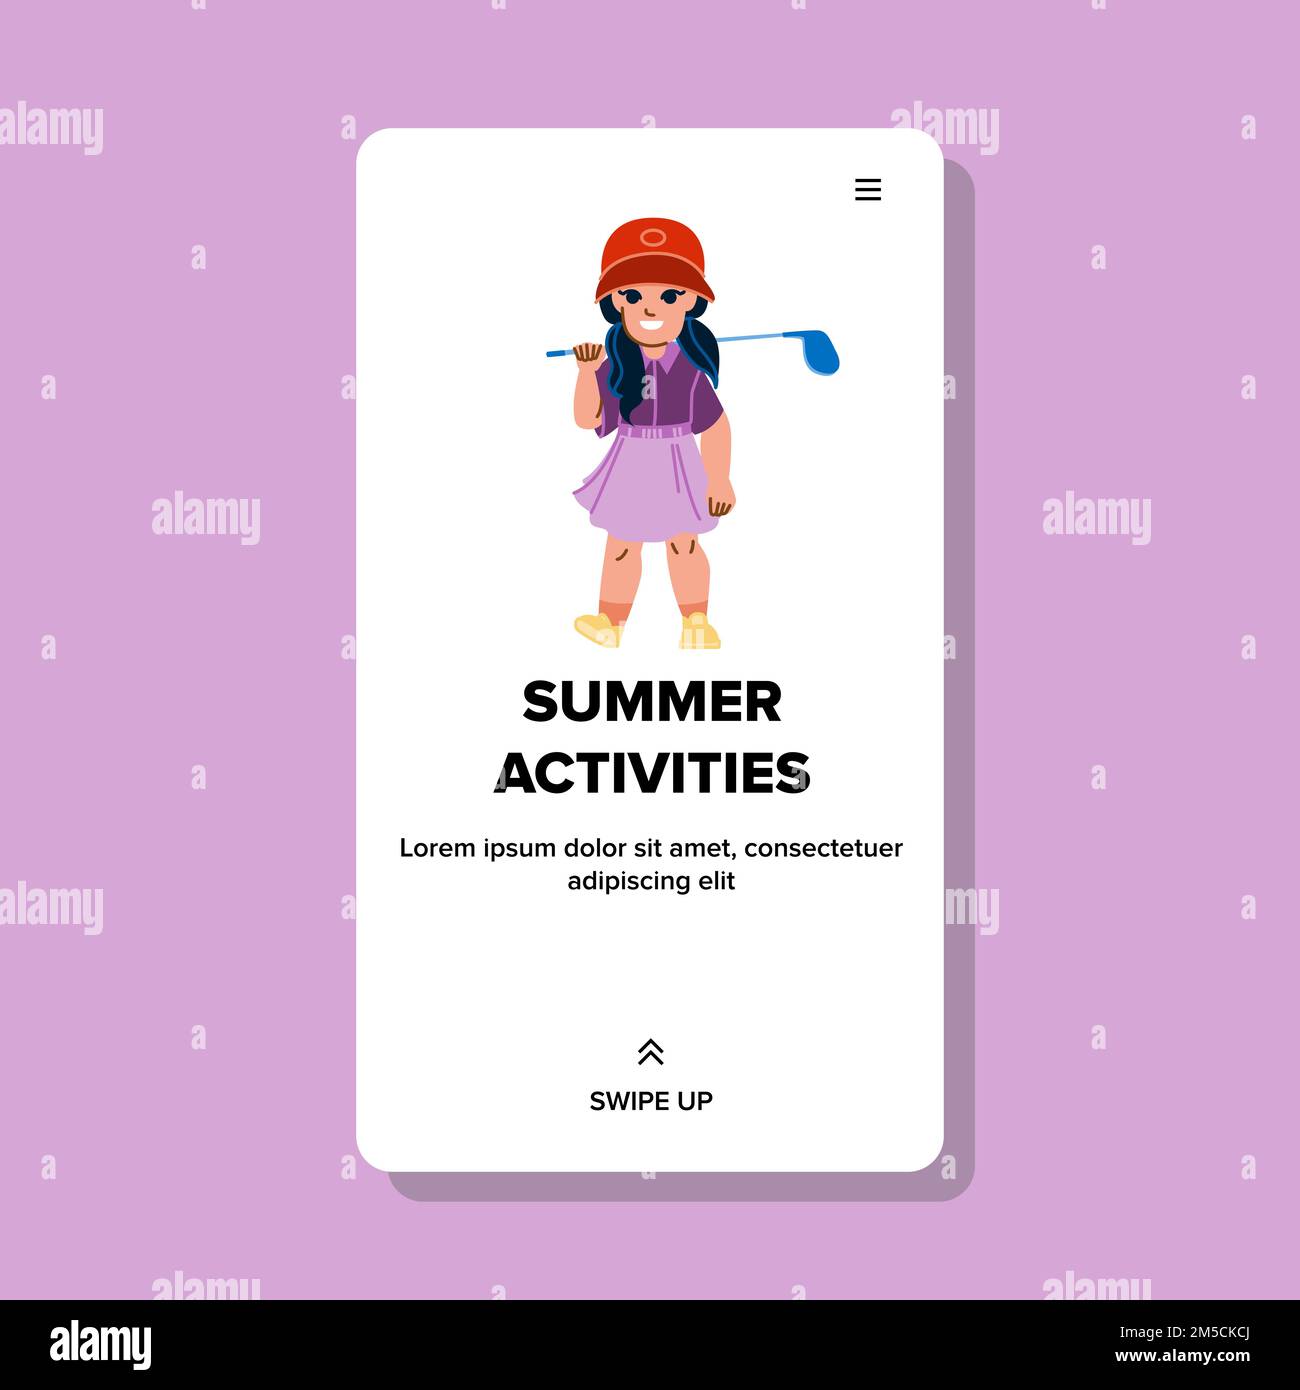 summer activities kid girl vector Stock Vector